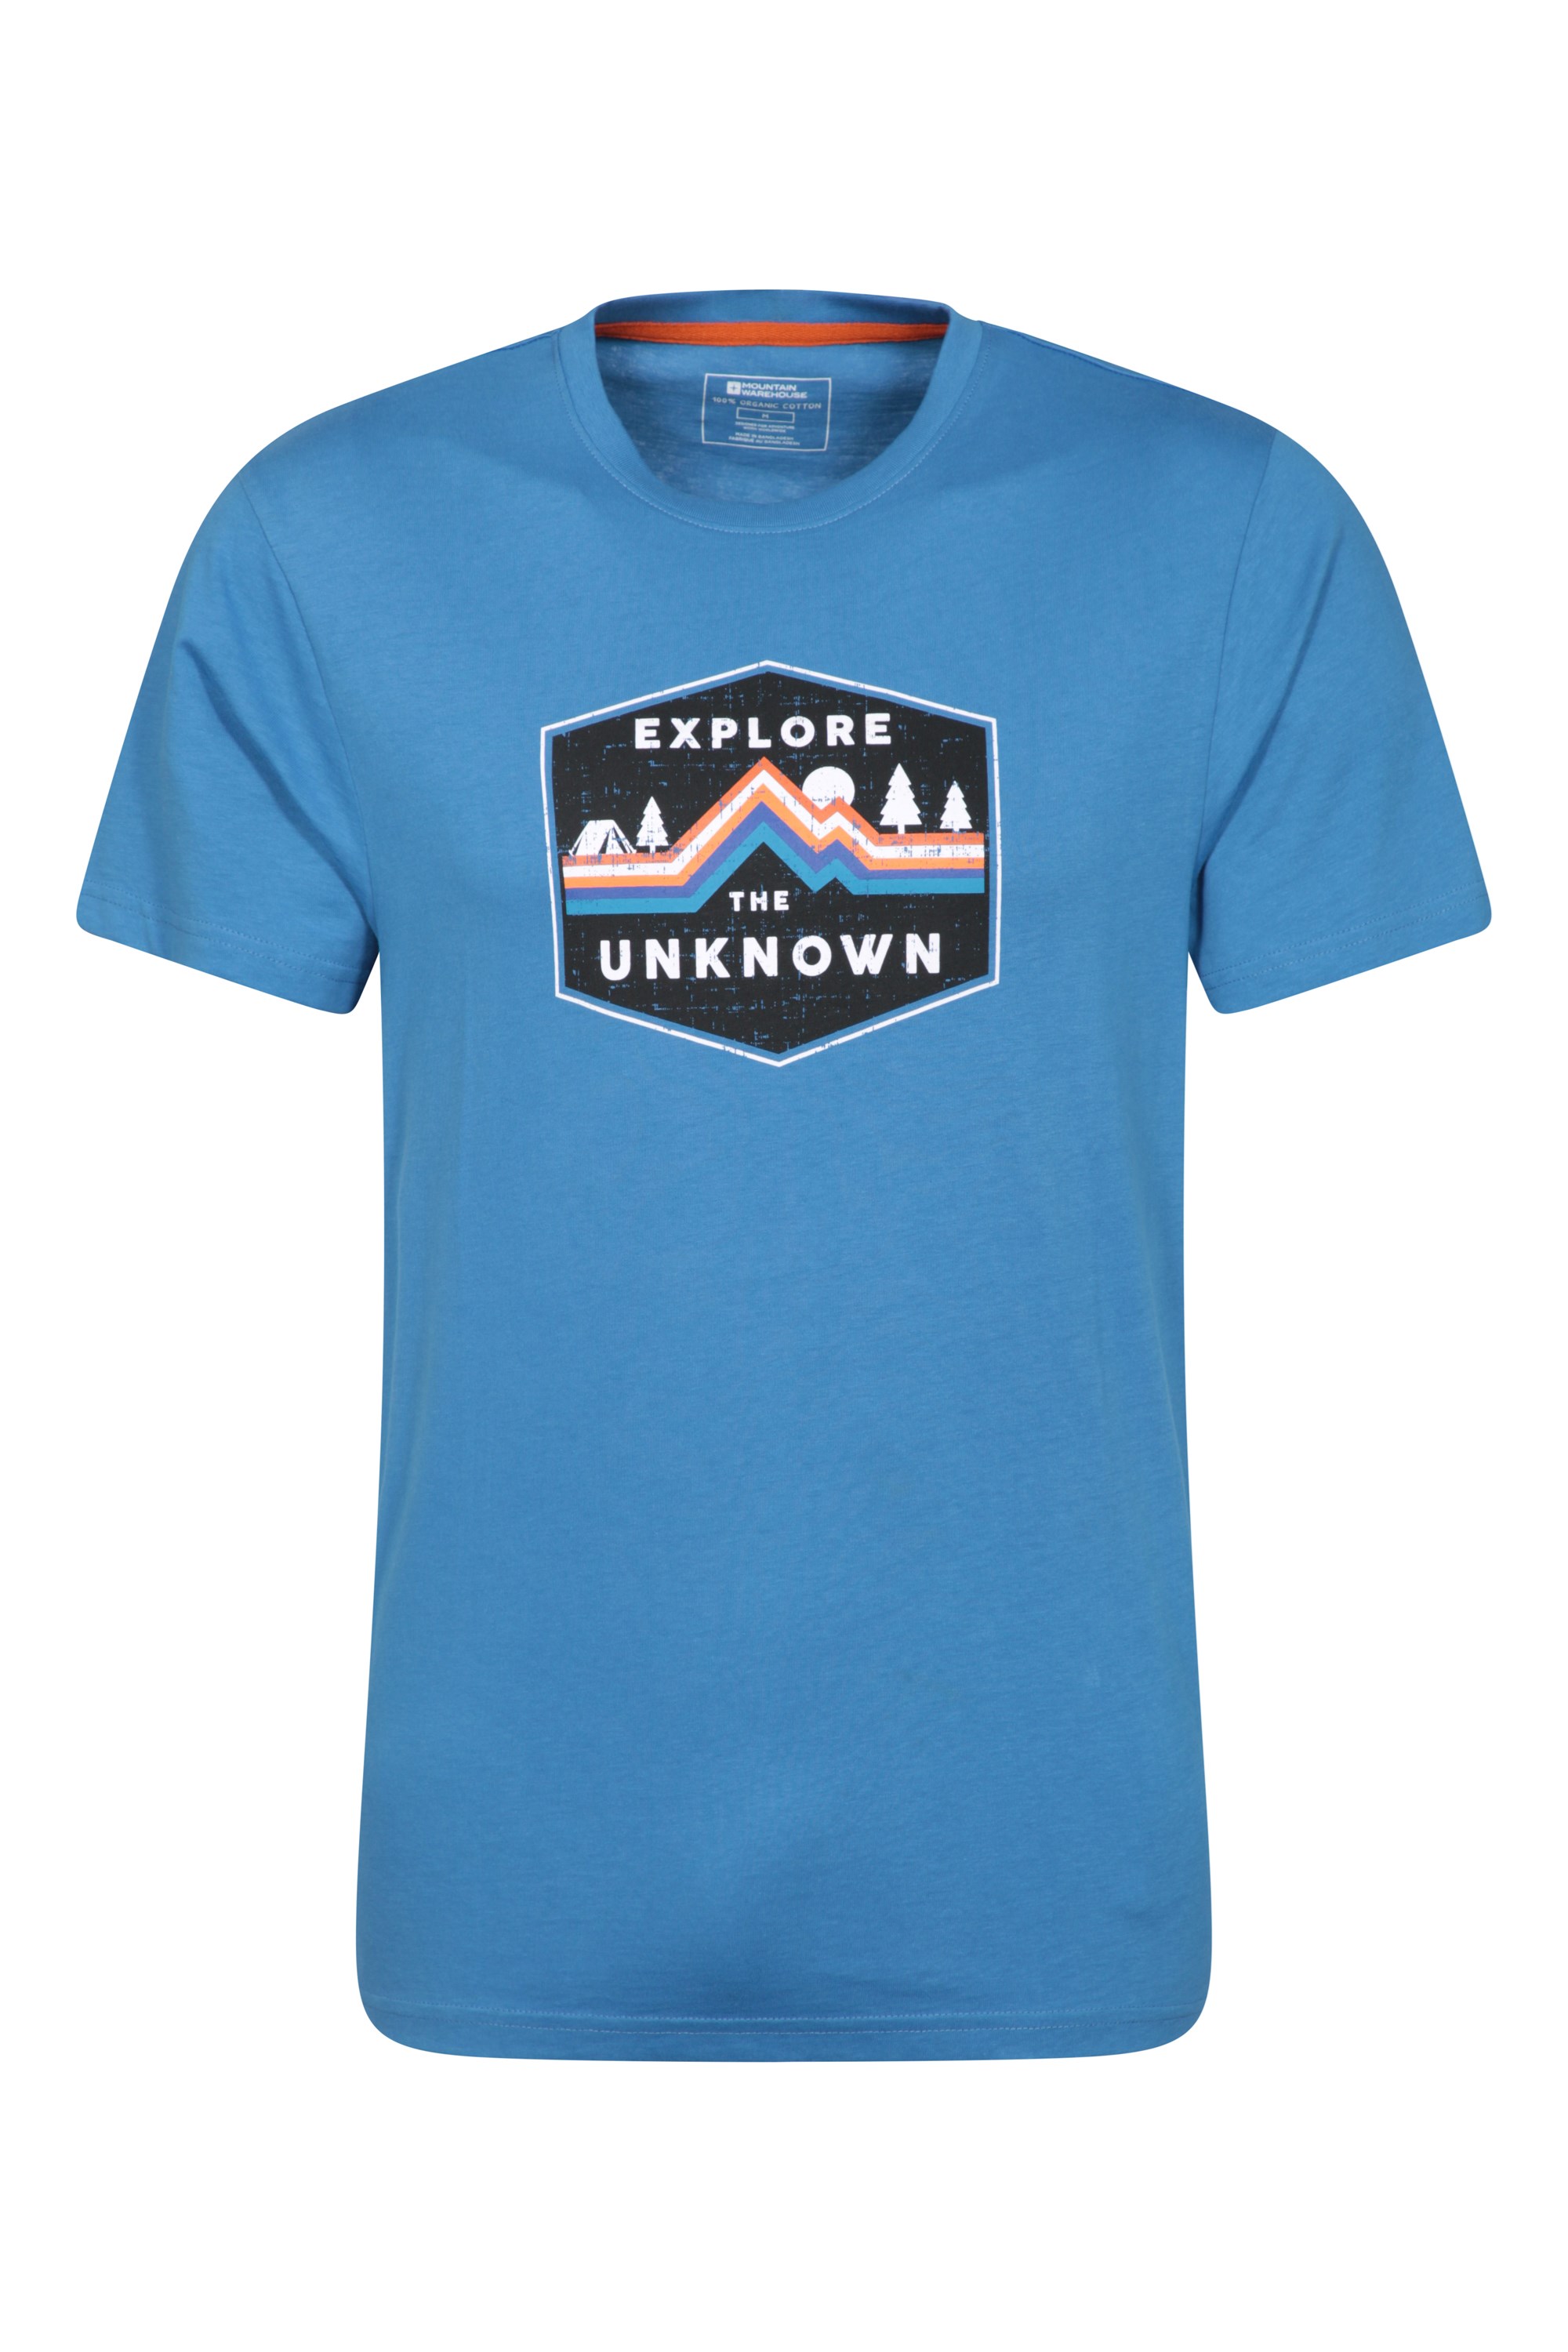 T-Shirt Explore The Unknown Homme - Bleu